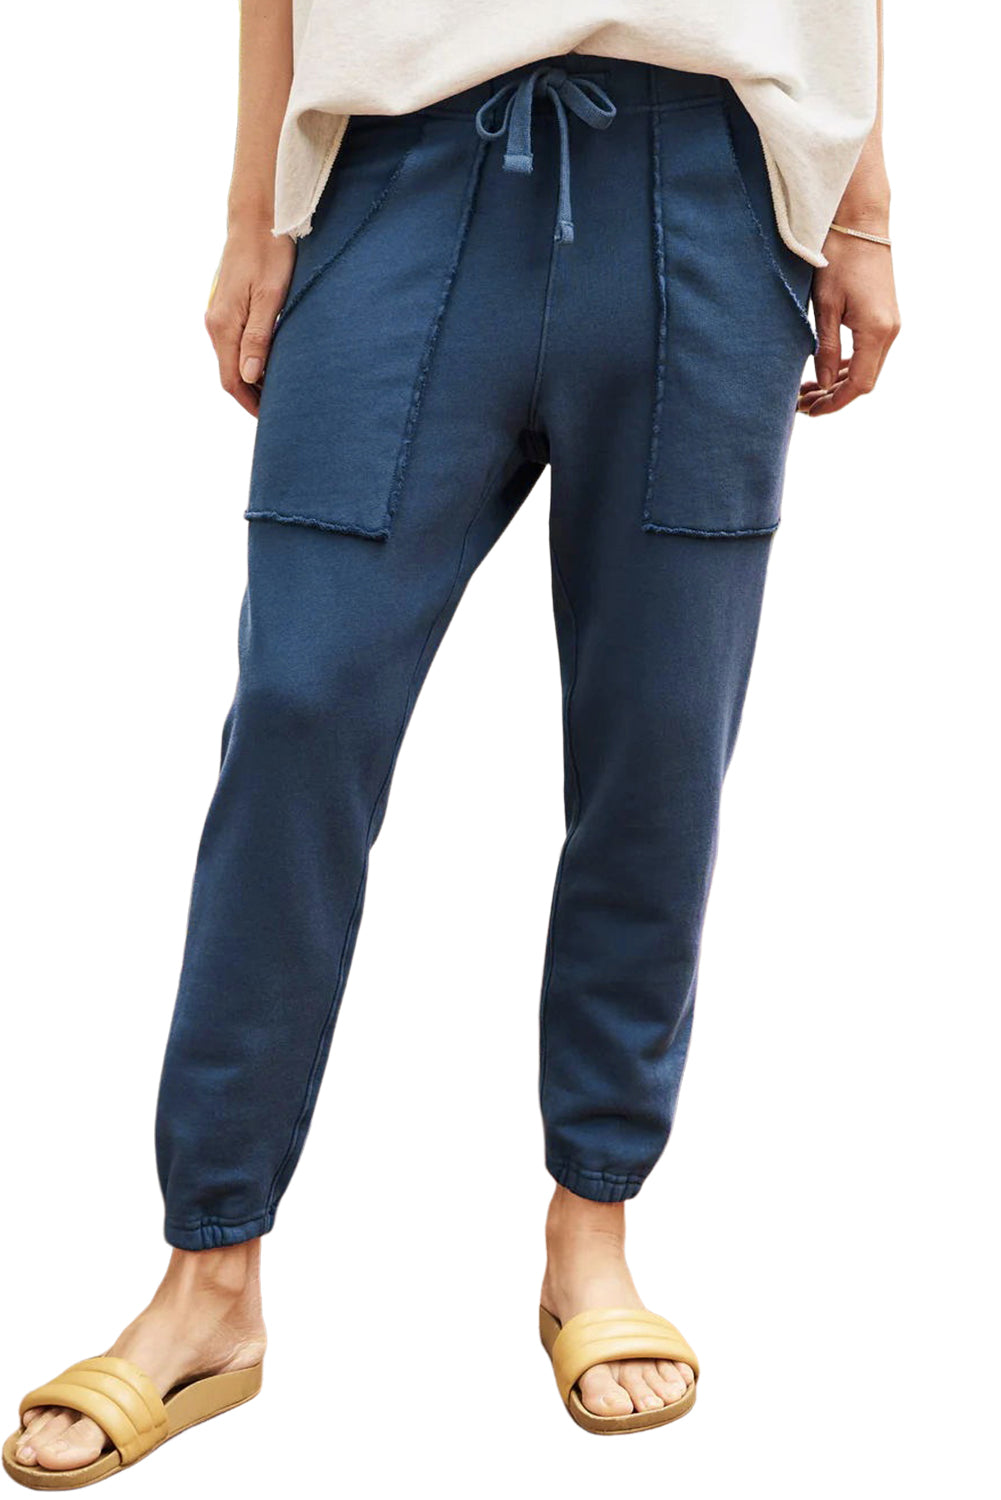 Pantalon de jogging bleu marine avec poches effilochées et cordon de serrage